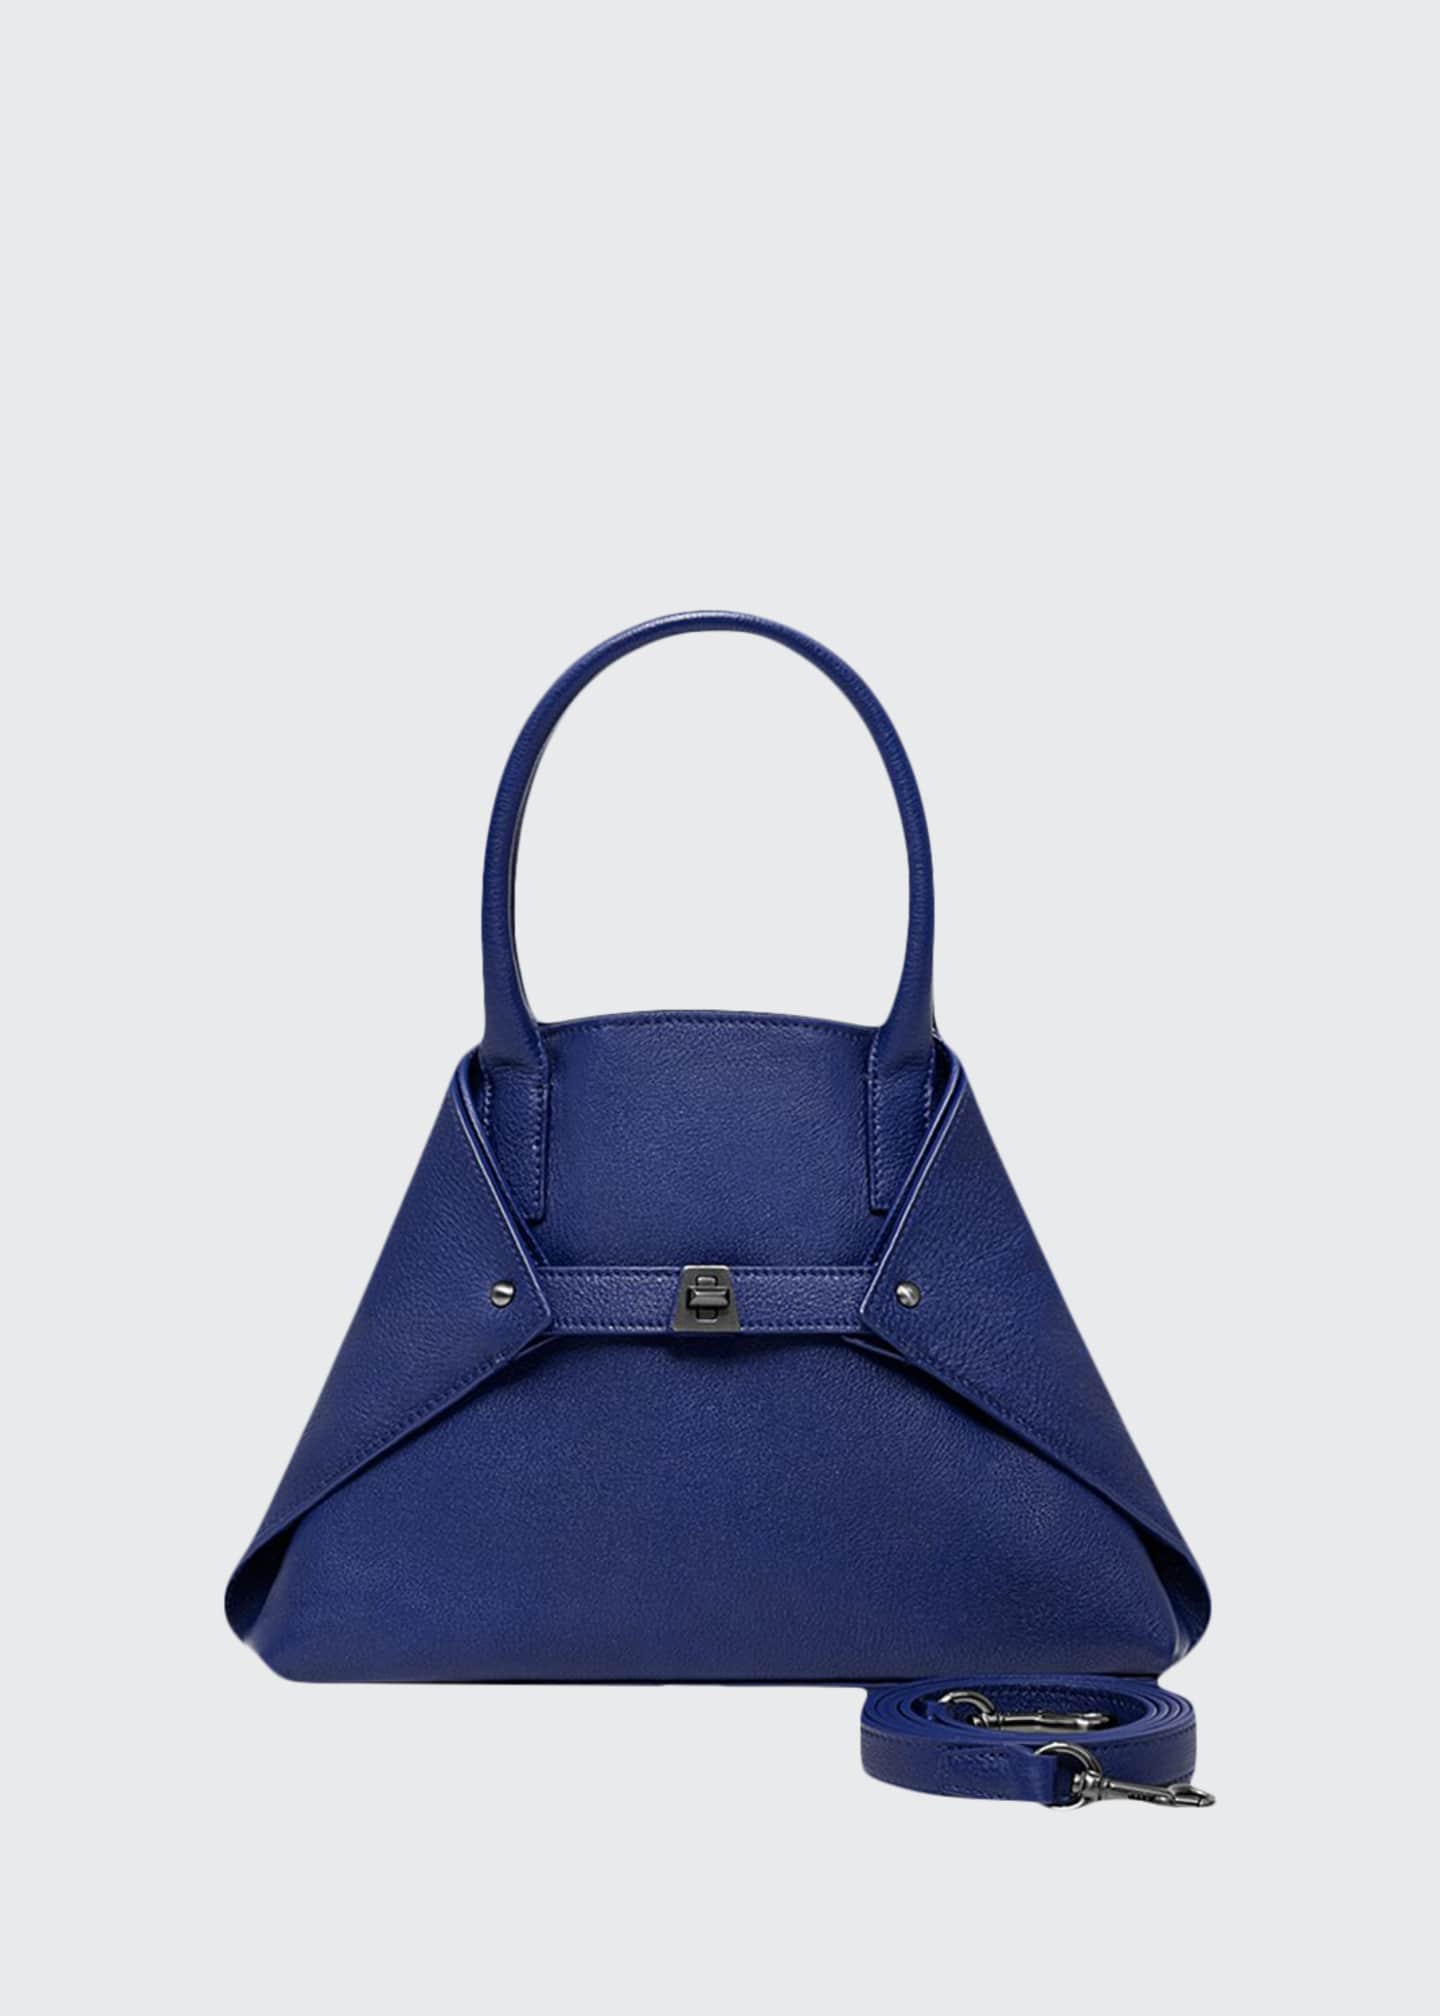 VBH Seven 30 Shiny Top Handle Bag, Blue